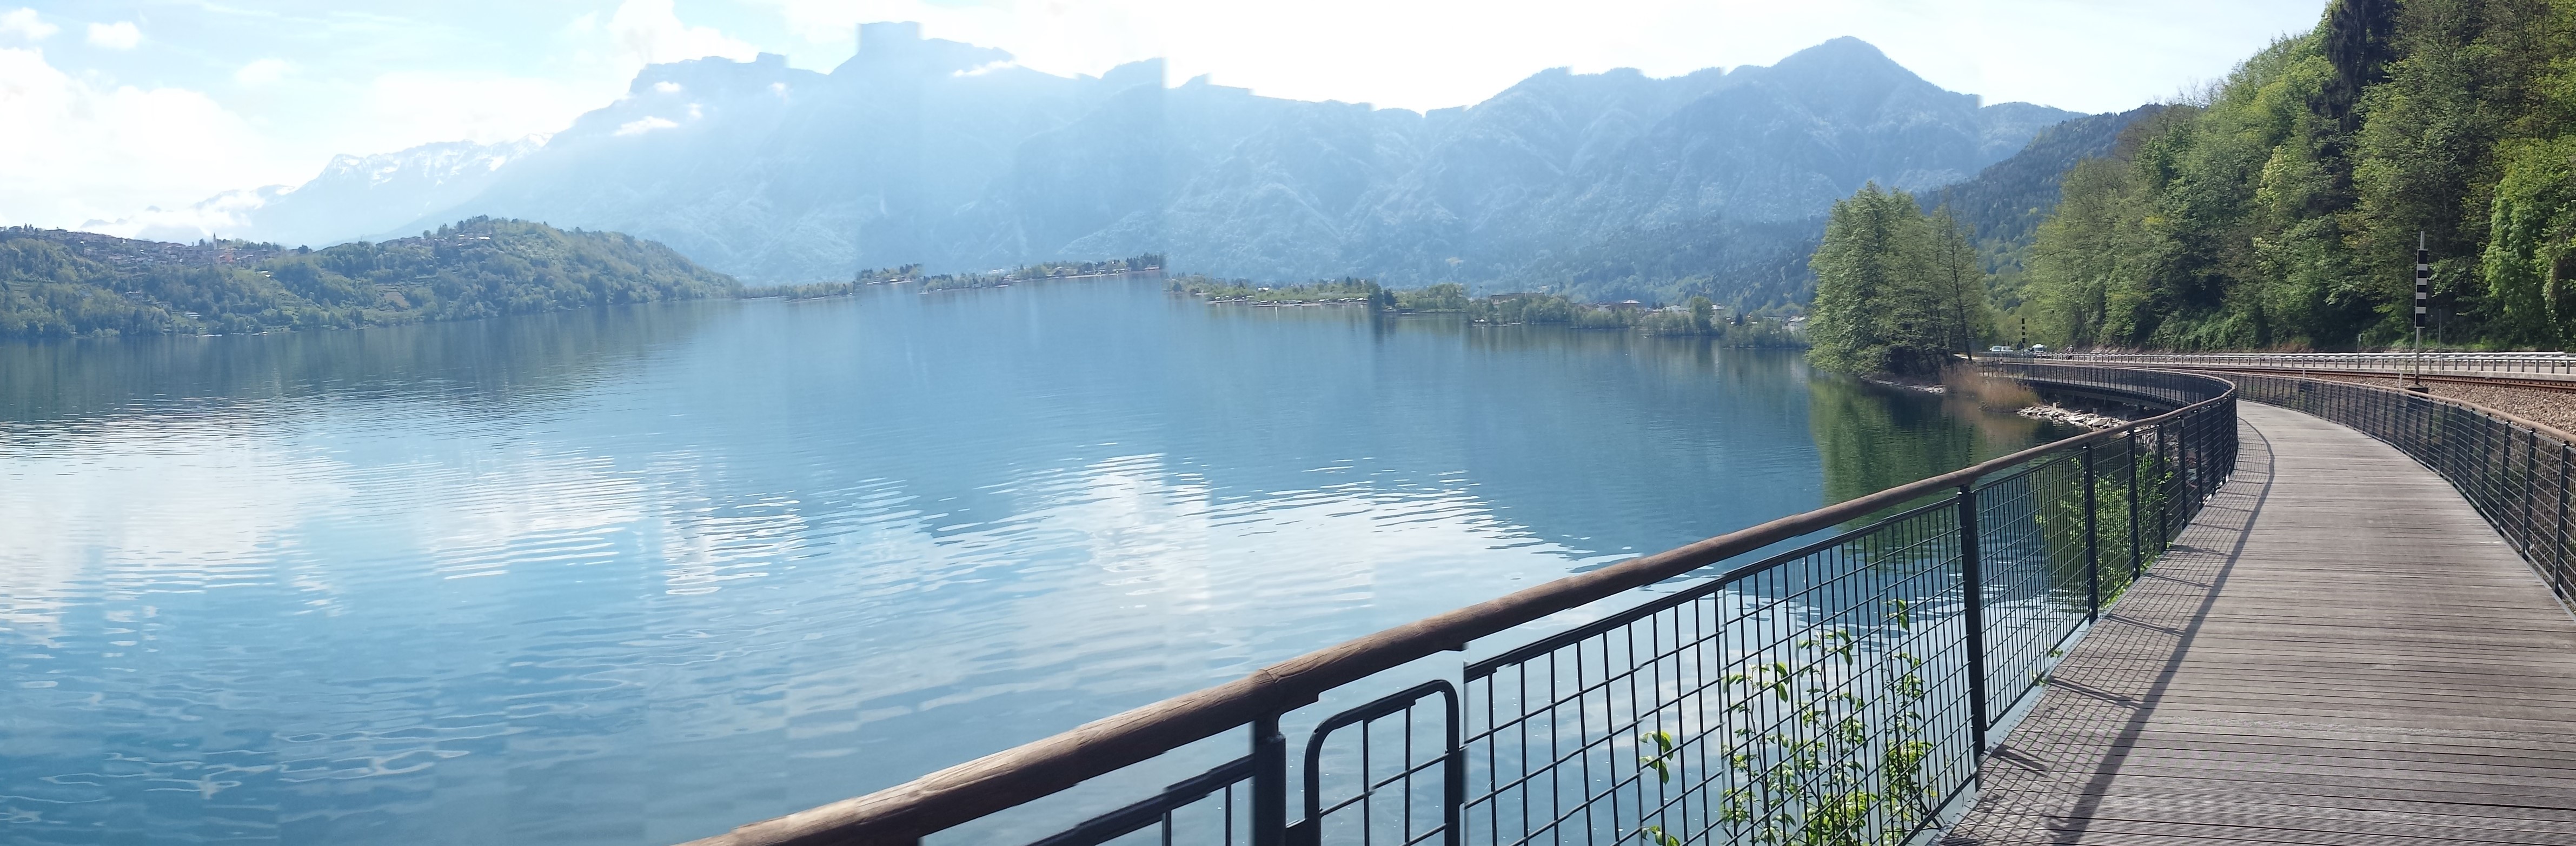 ciclabile sospesa sul lago con montagne sullo sfondo